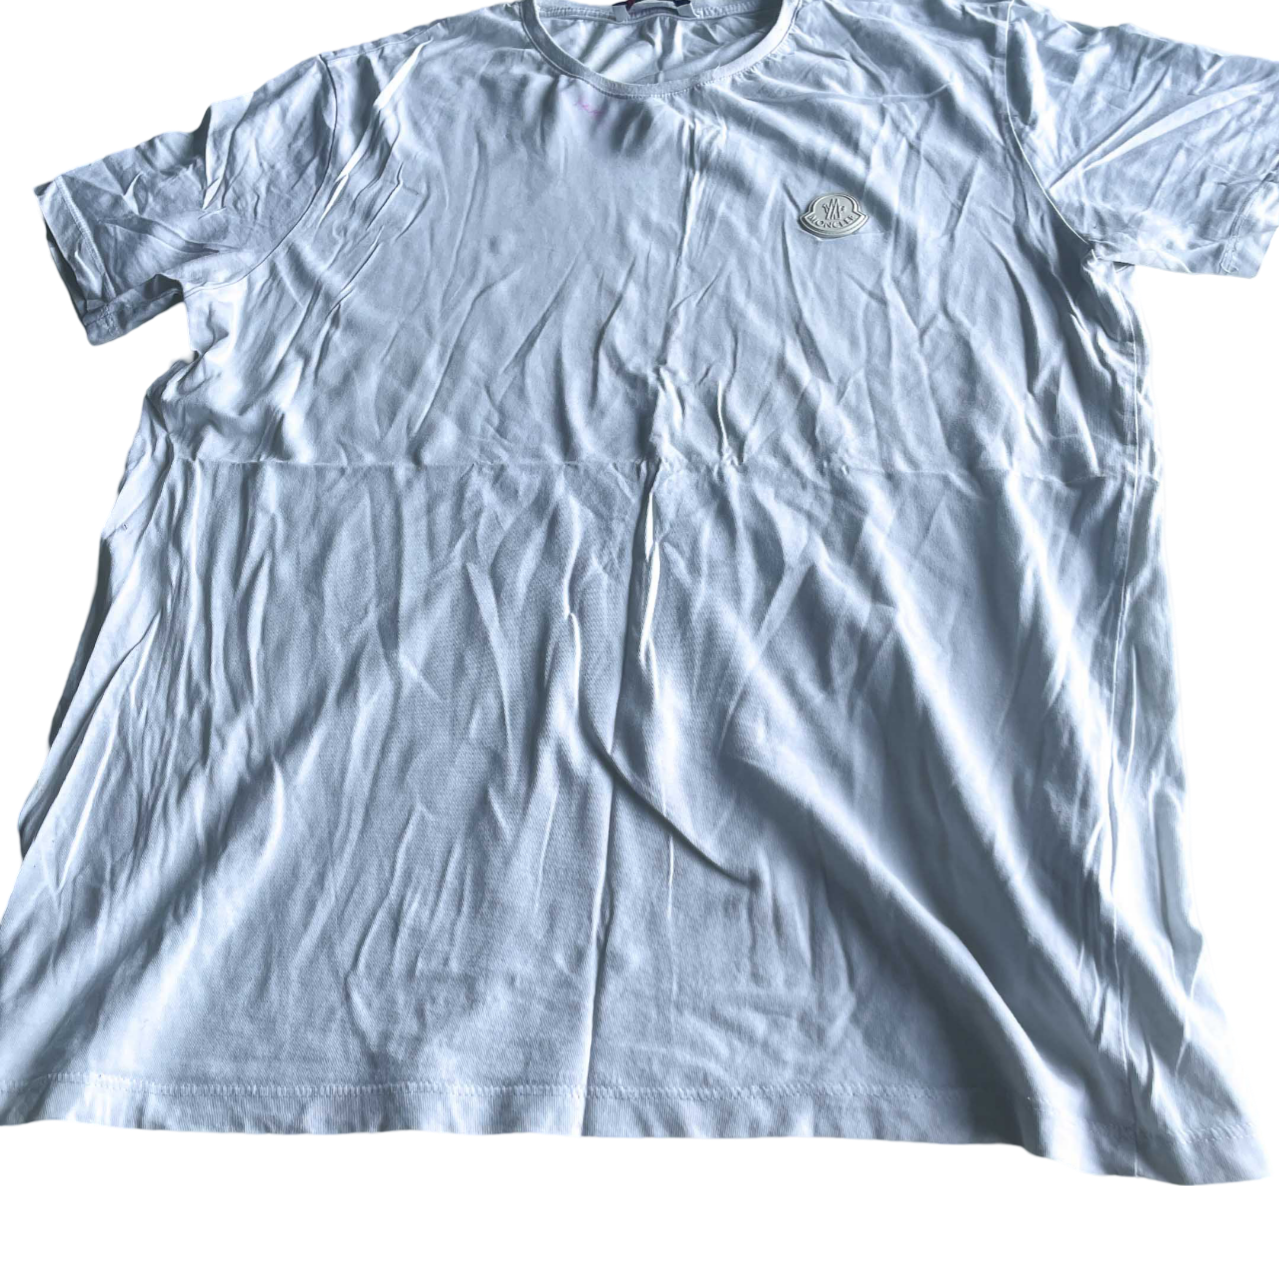 Vintage Moncler Men's T-Shirt. In size medium SKU 5207